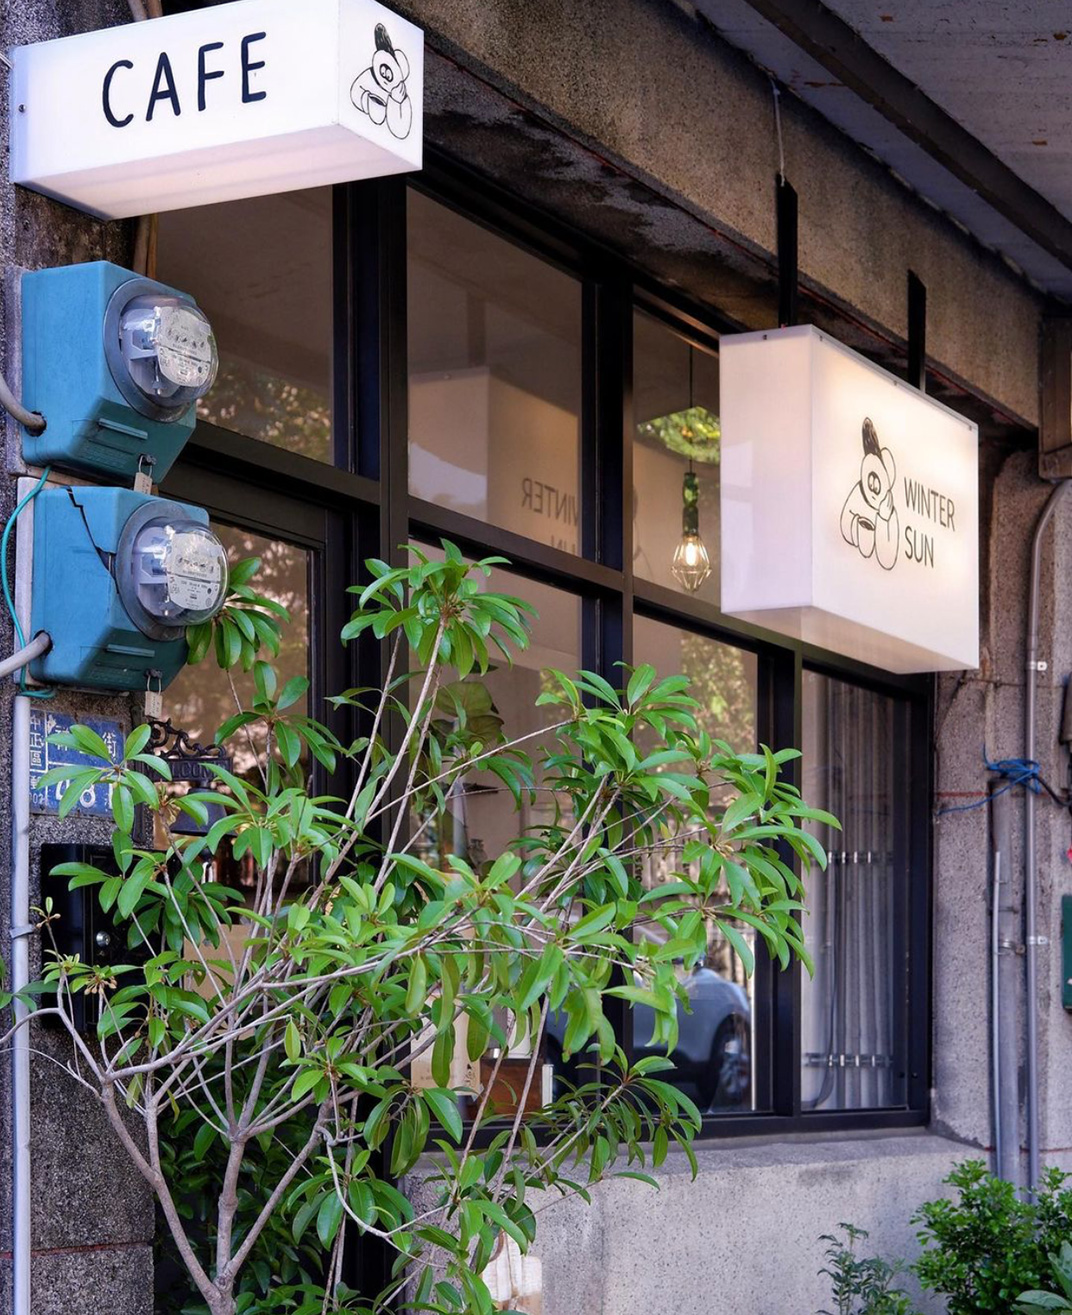 斜坡上得老宅咖啡店 CAFE冬煦商行 台湾 广州 咖啡店 复古 老宅 logo设计 vi设计 空间设计